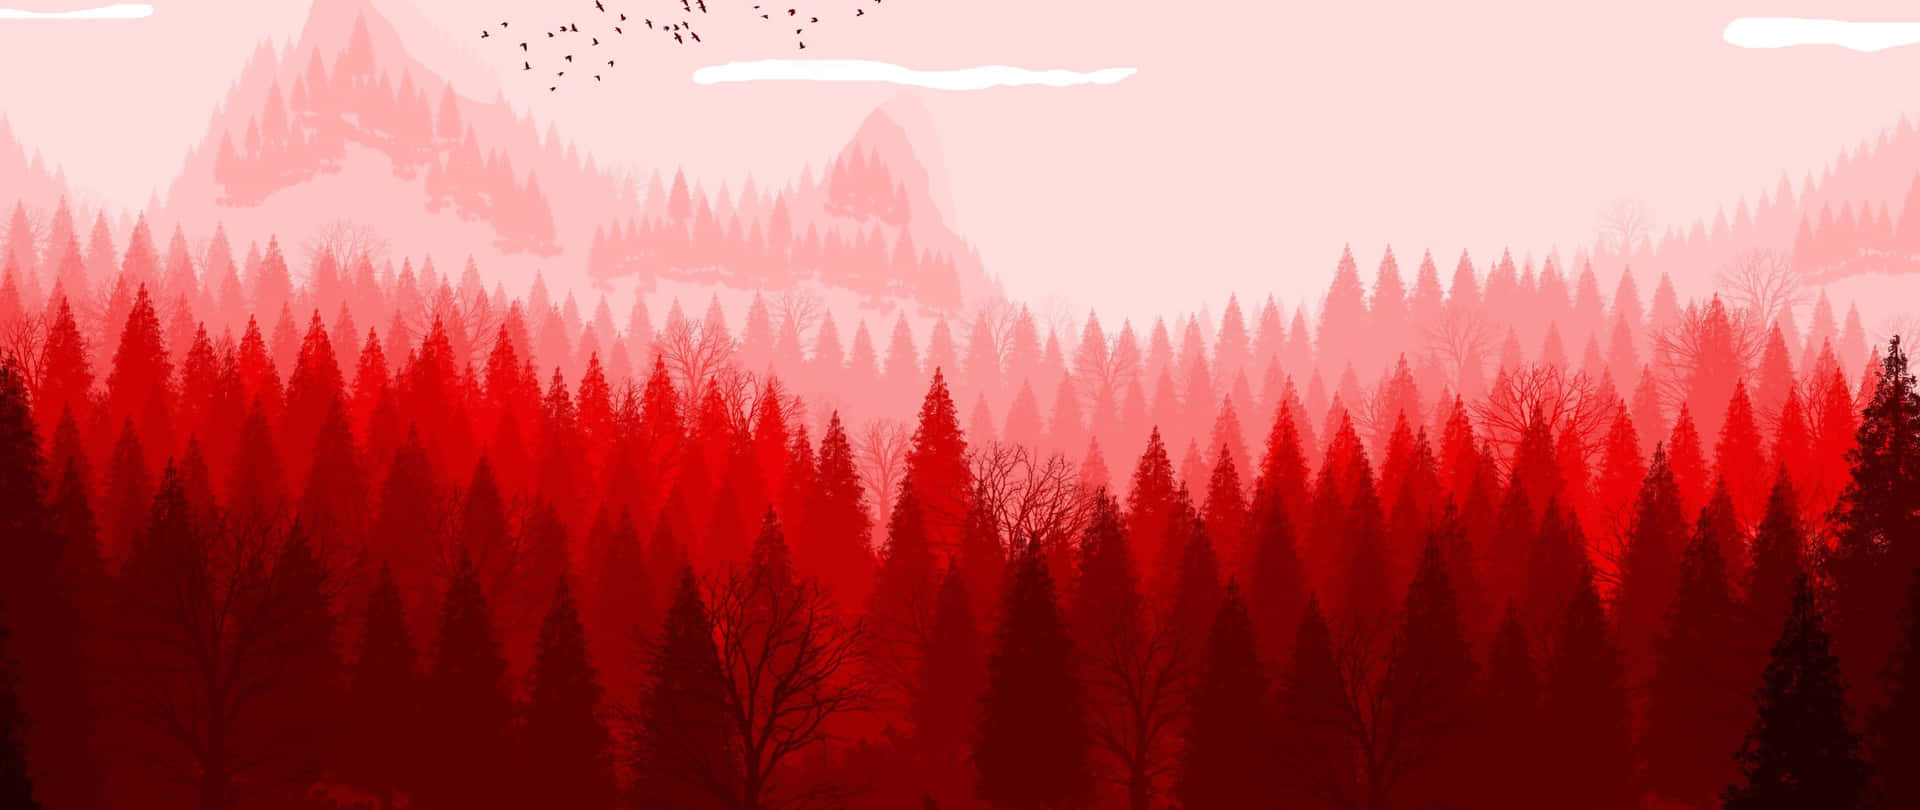 Roterästhetischer Wald-kunst 2560x1080 Wallpaper